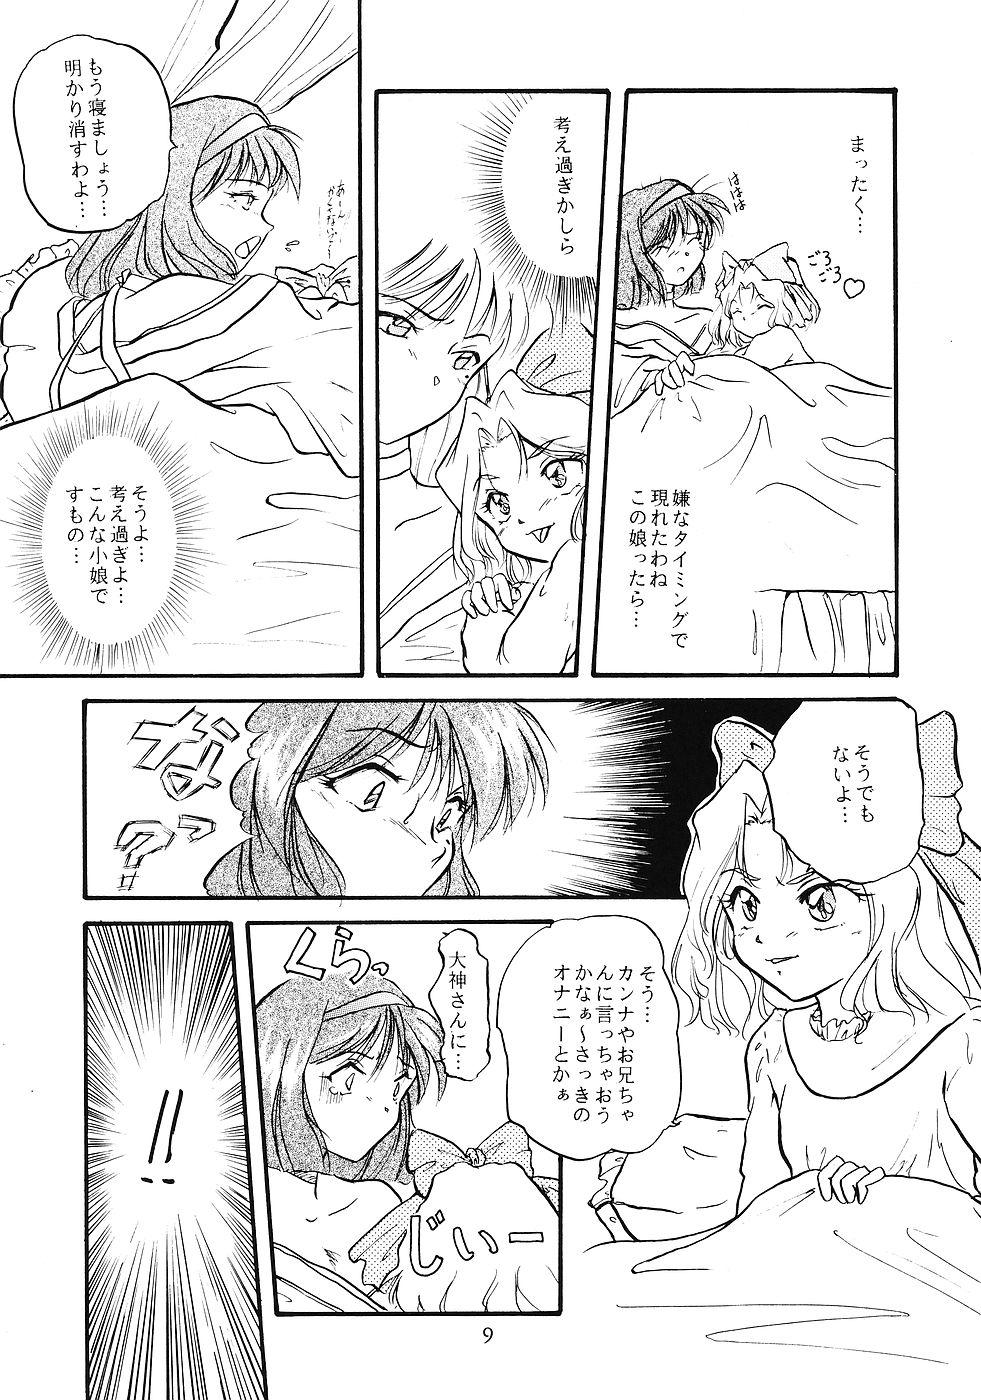 Peeing WIEGE 3 - Cardcaptor sakura Sakura taisen Hunks - Page 8